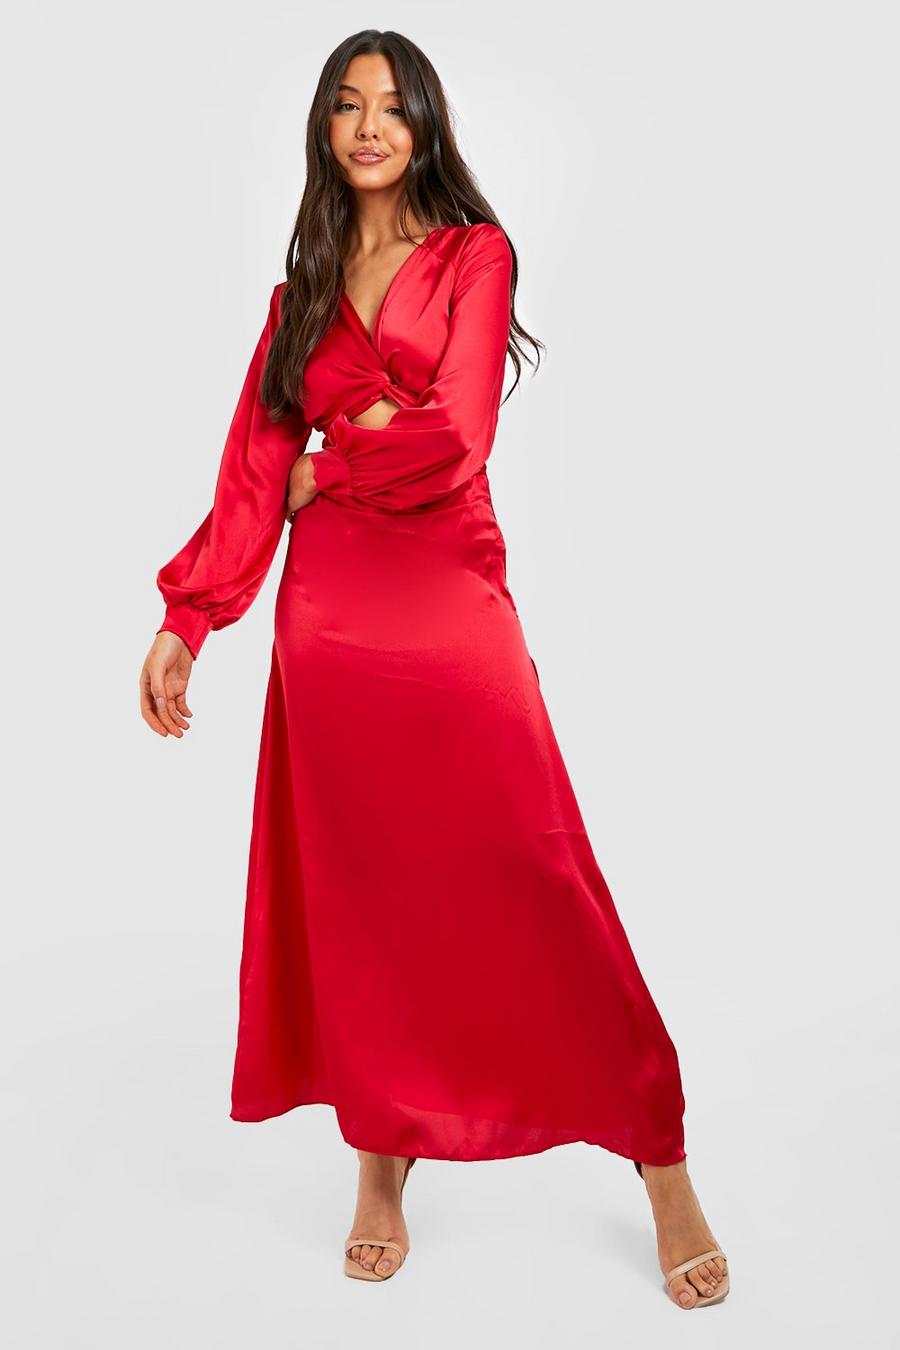 Red Satin Twist Cut Out Maxi Dress